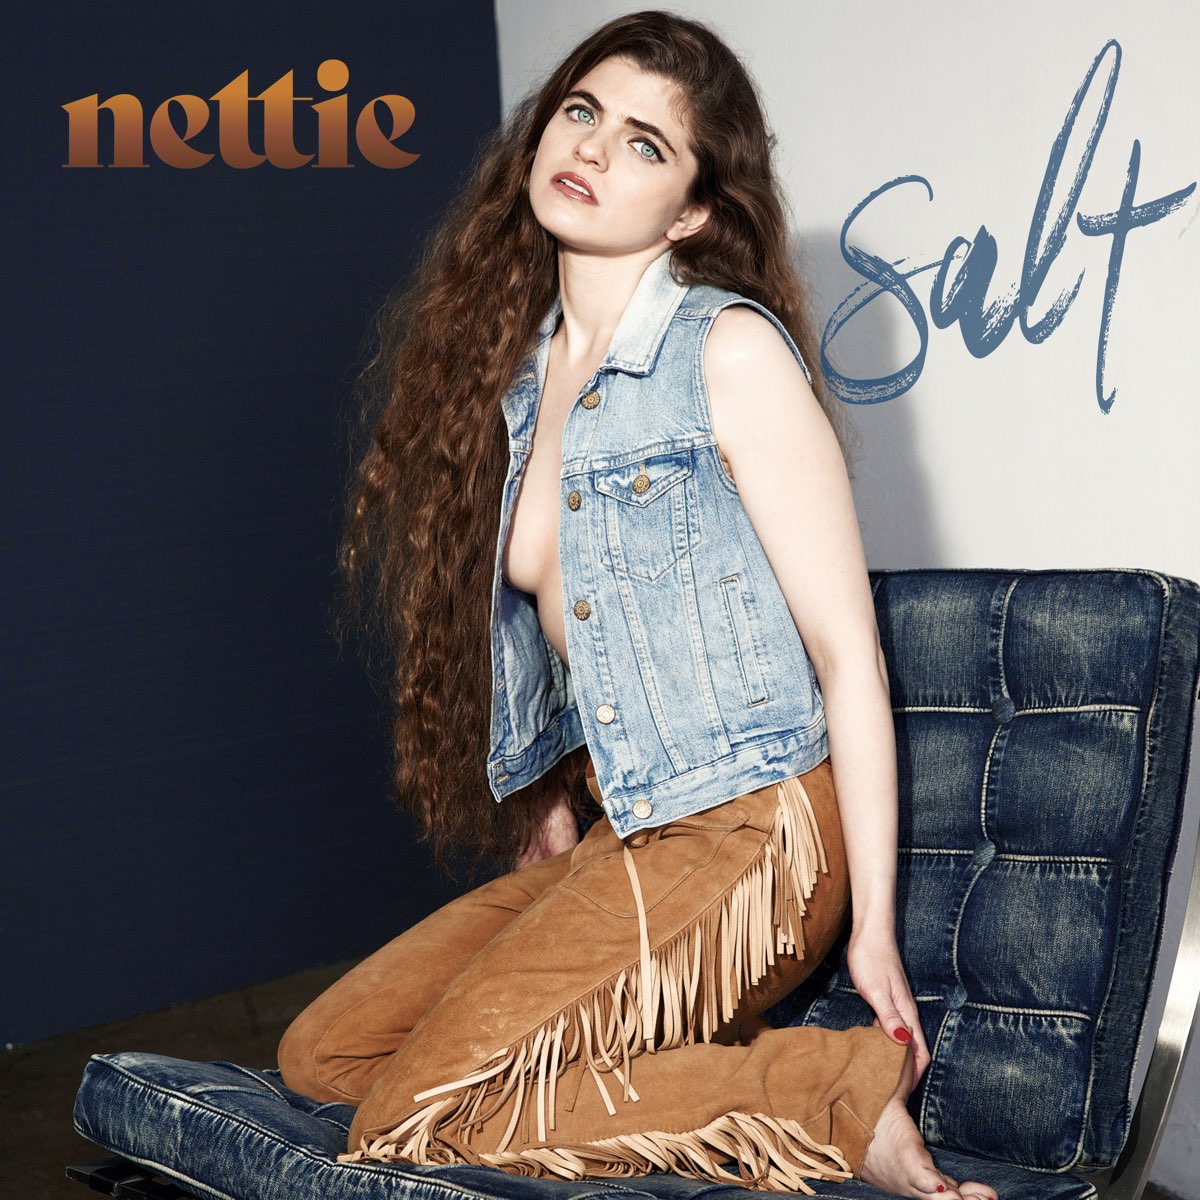 Salt - Single by Nettie on Apple Music